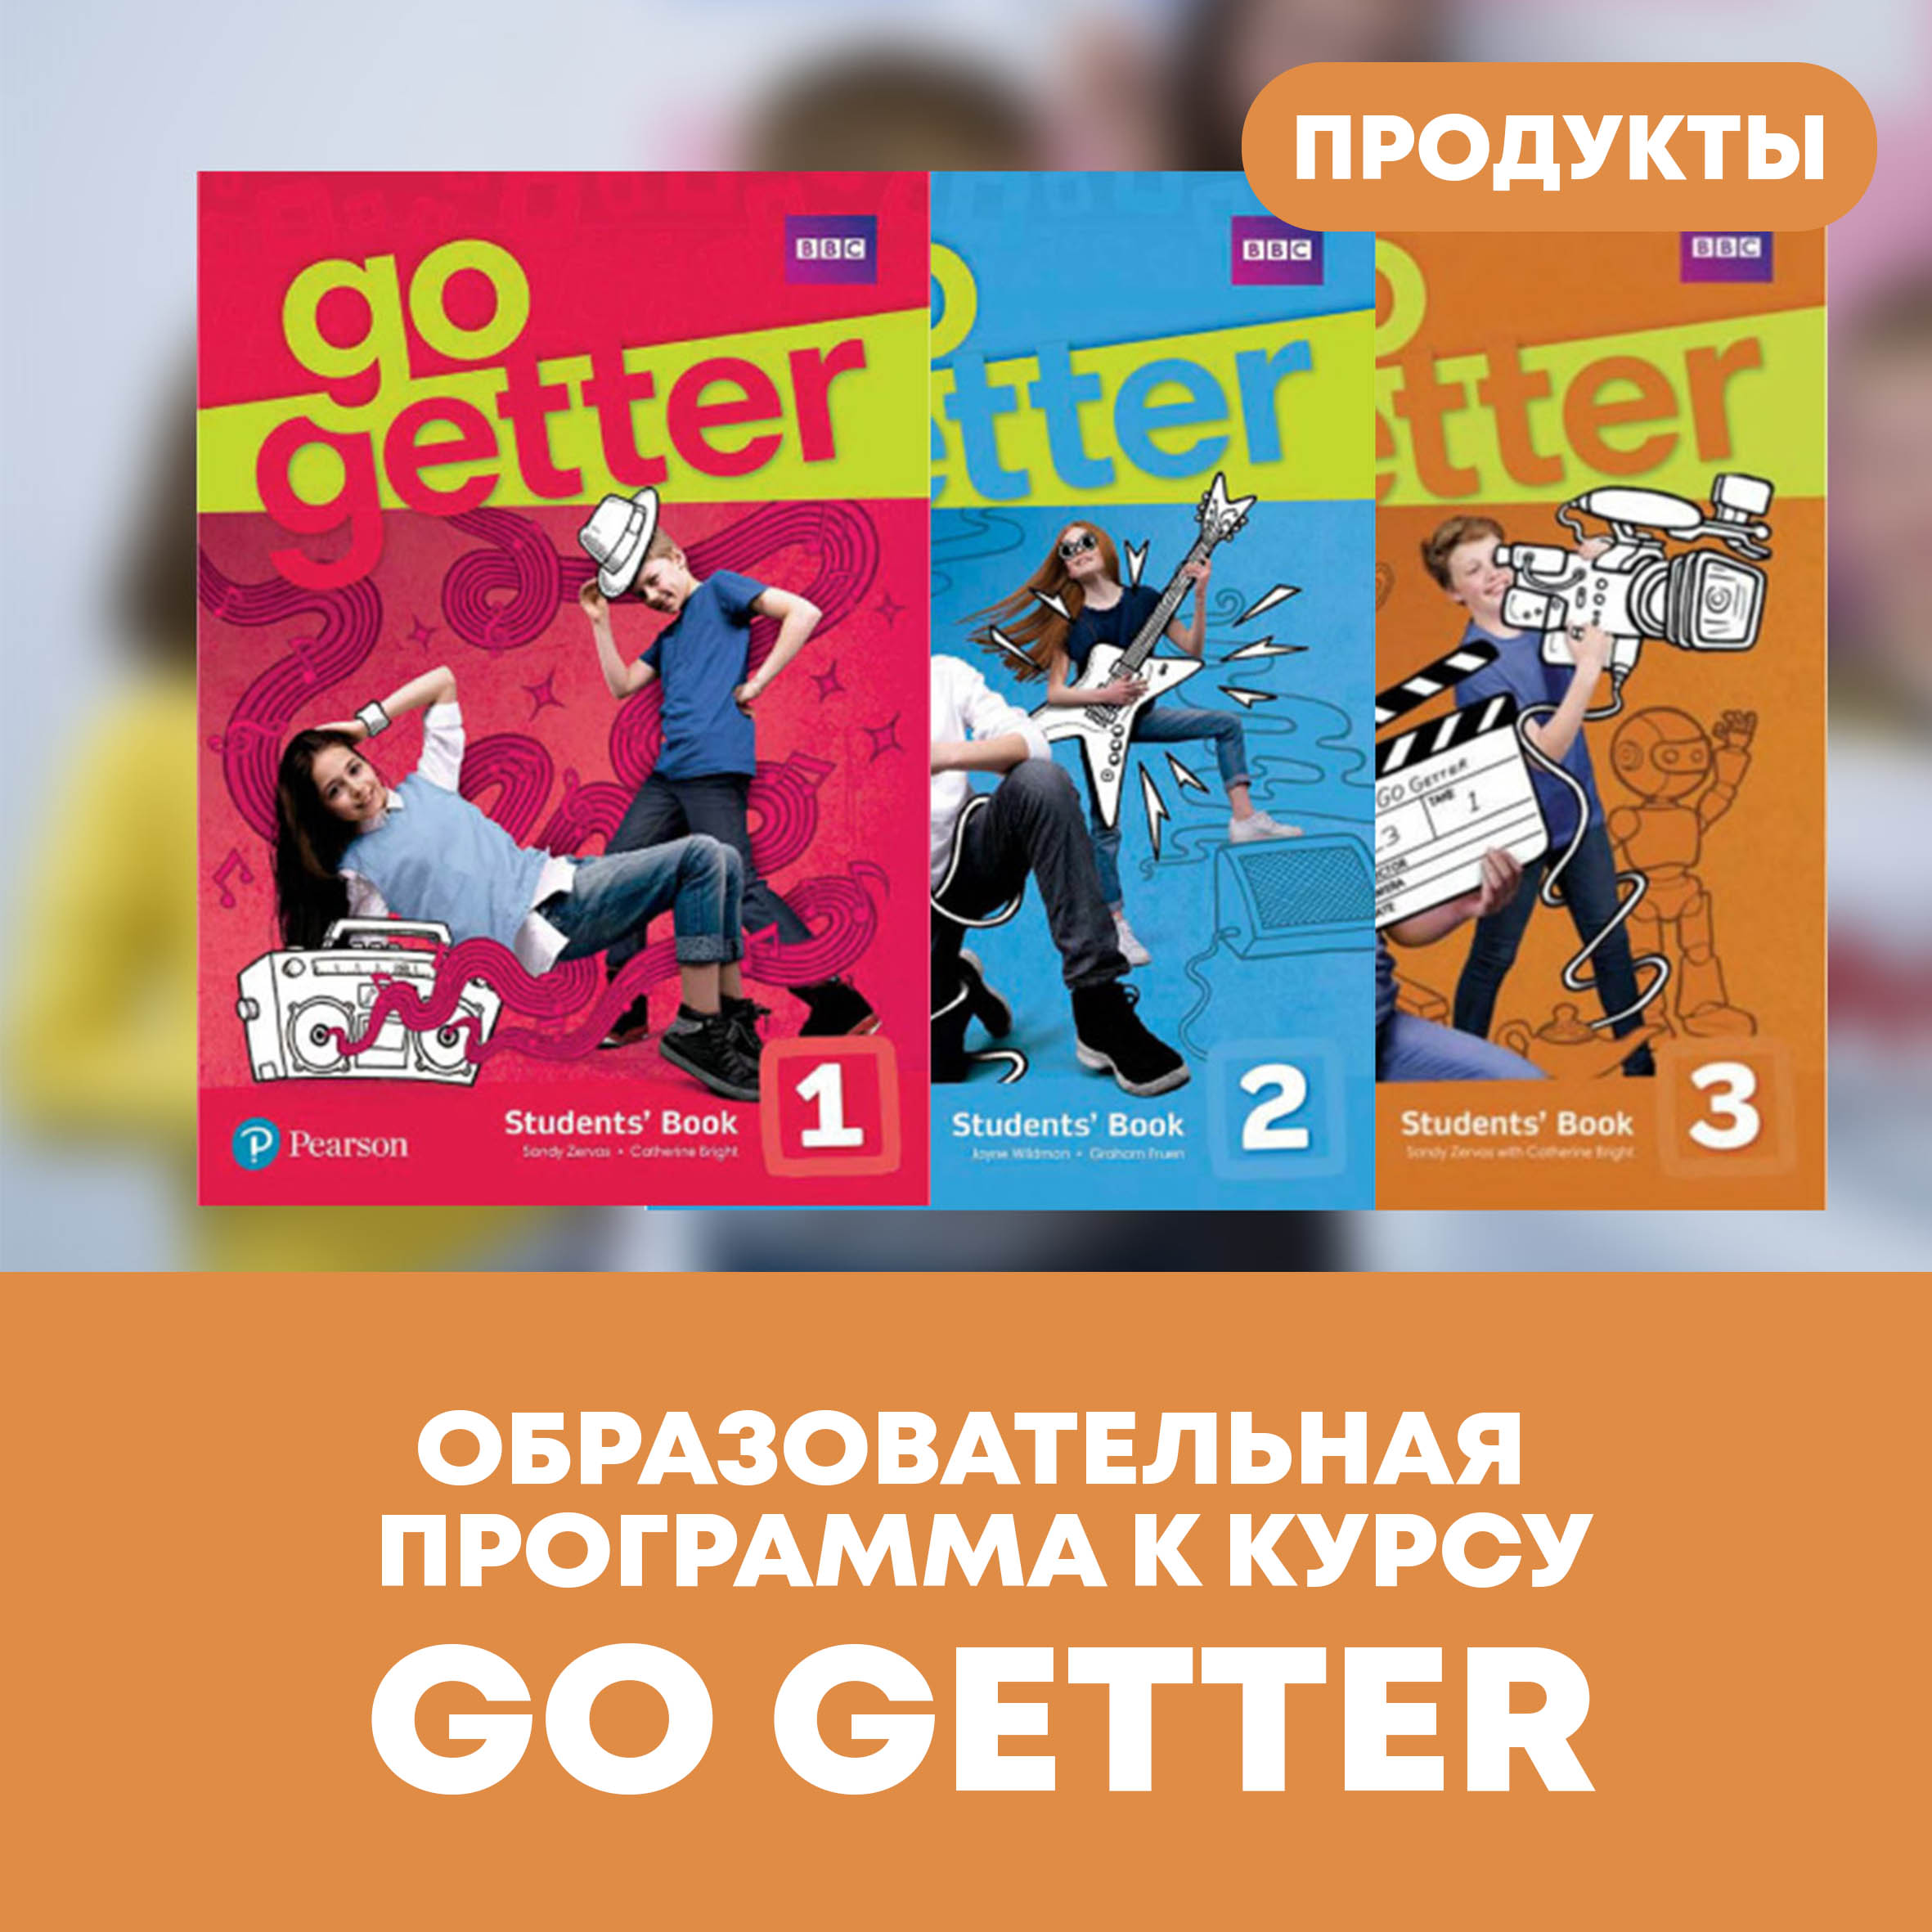 Go getter 3.3. Учебник по английскому go Getter. Go Getter Pearson 3. Учебник go Getter 1. Go Getter линейка учебников.